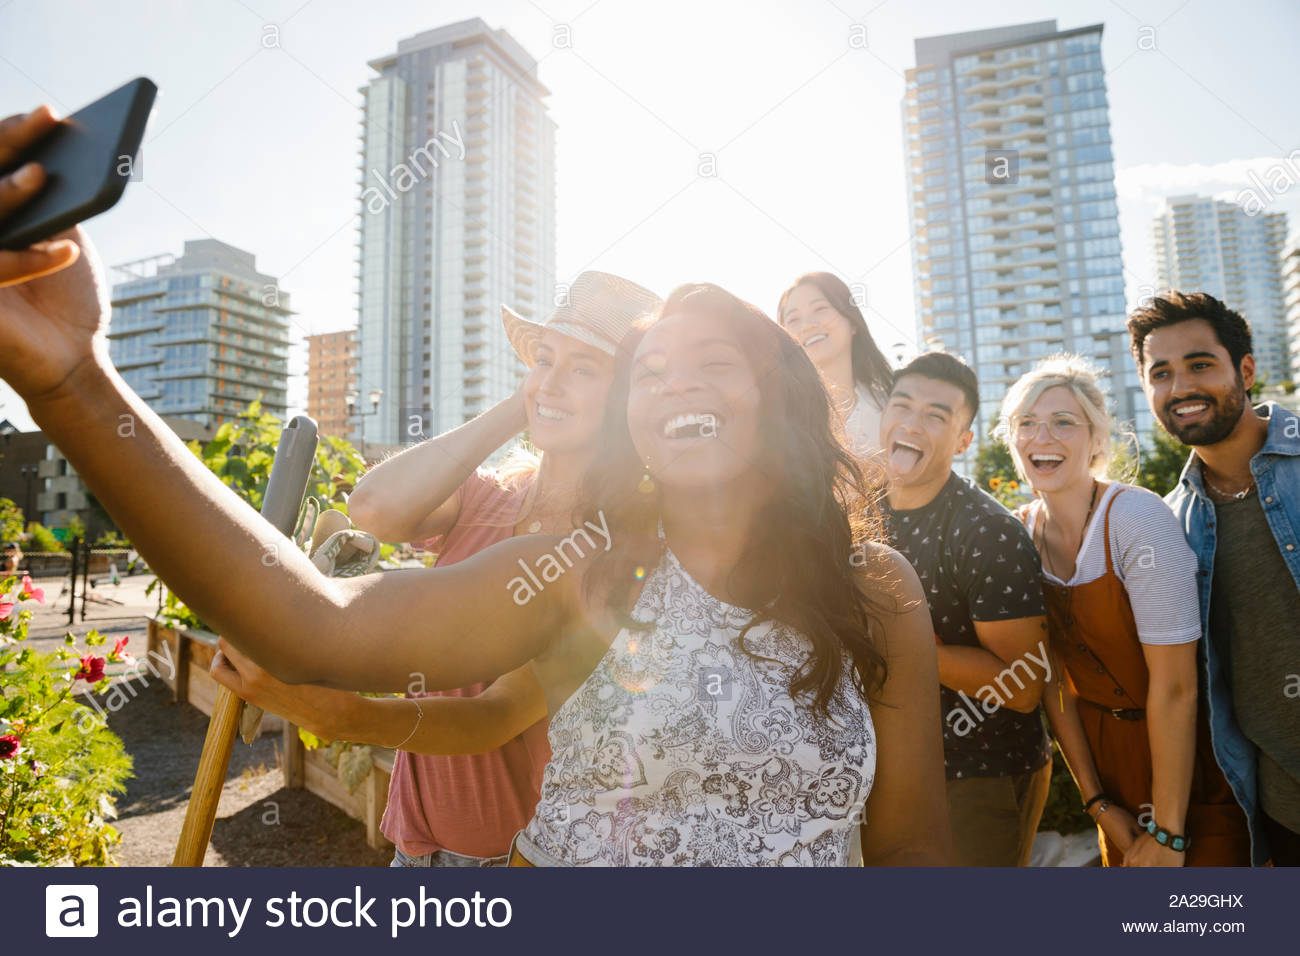 Felice, giocoso giovani amici adulti tenendo selfie con la fotocamera del telefono nella soleggiata, urban comunità giardino Foto Stock